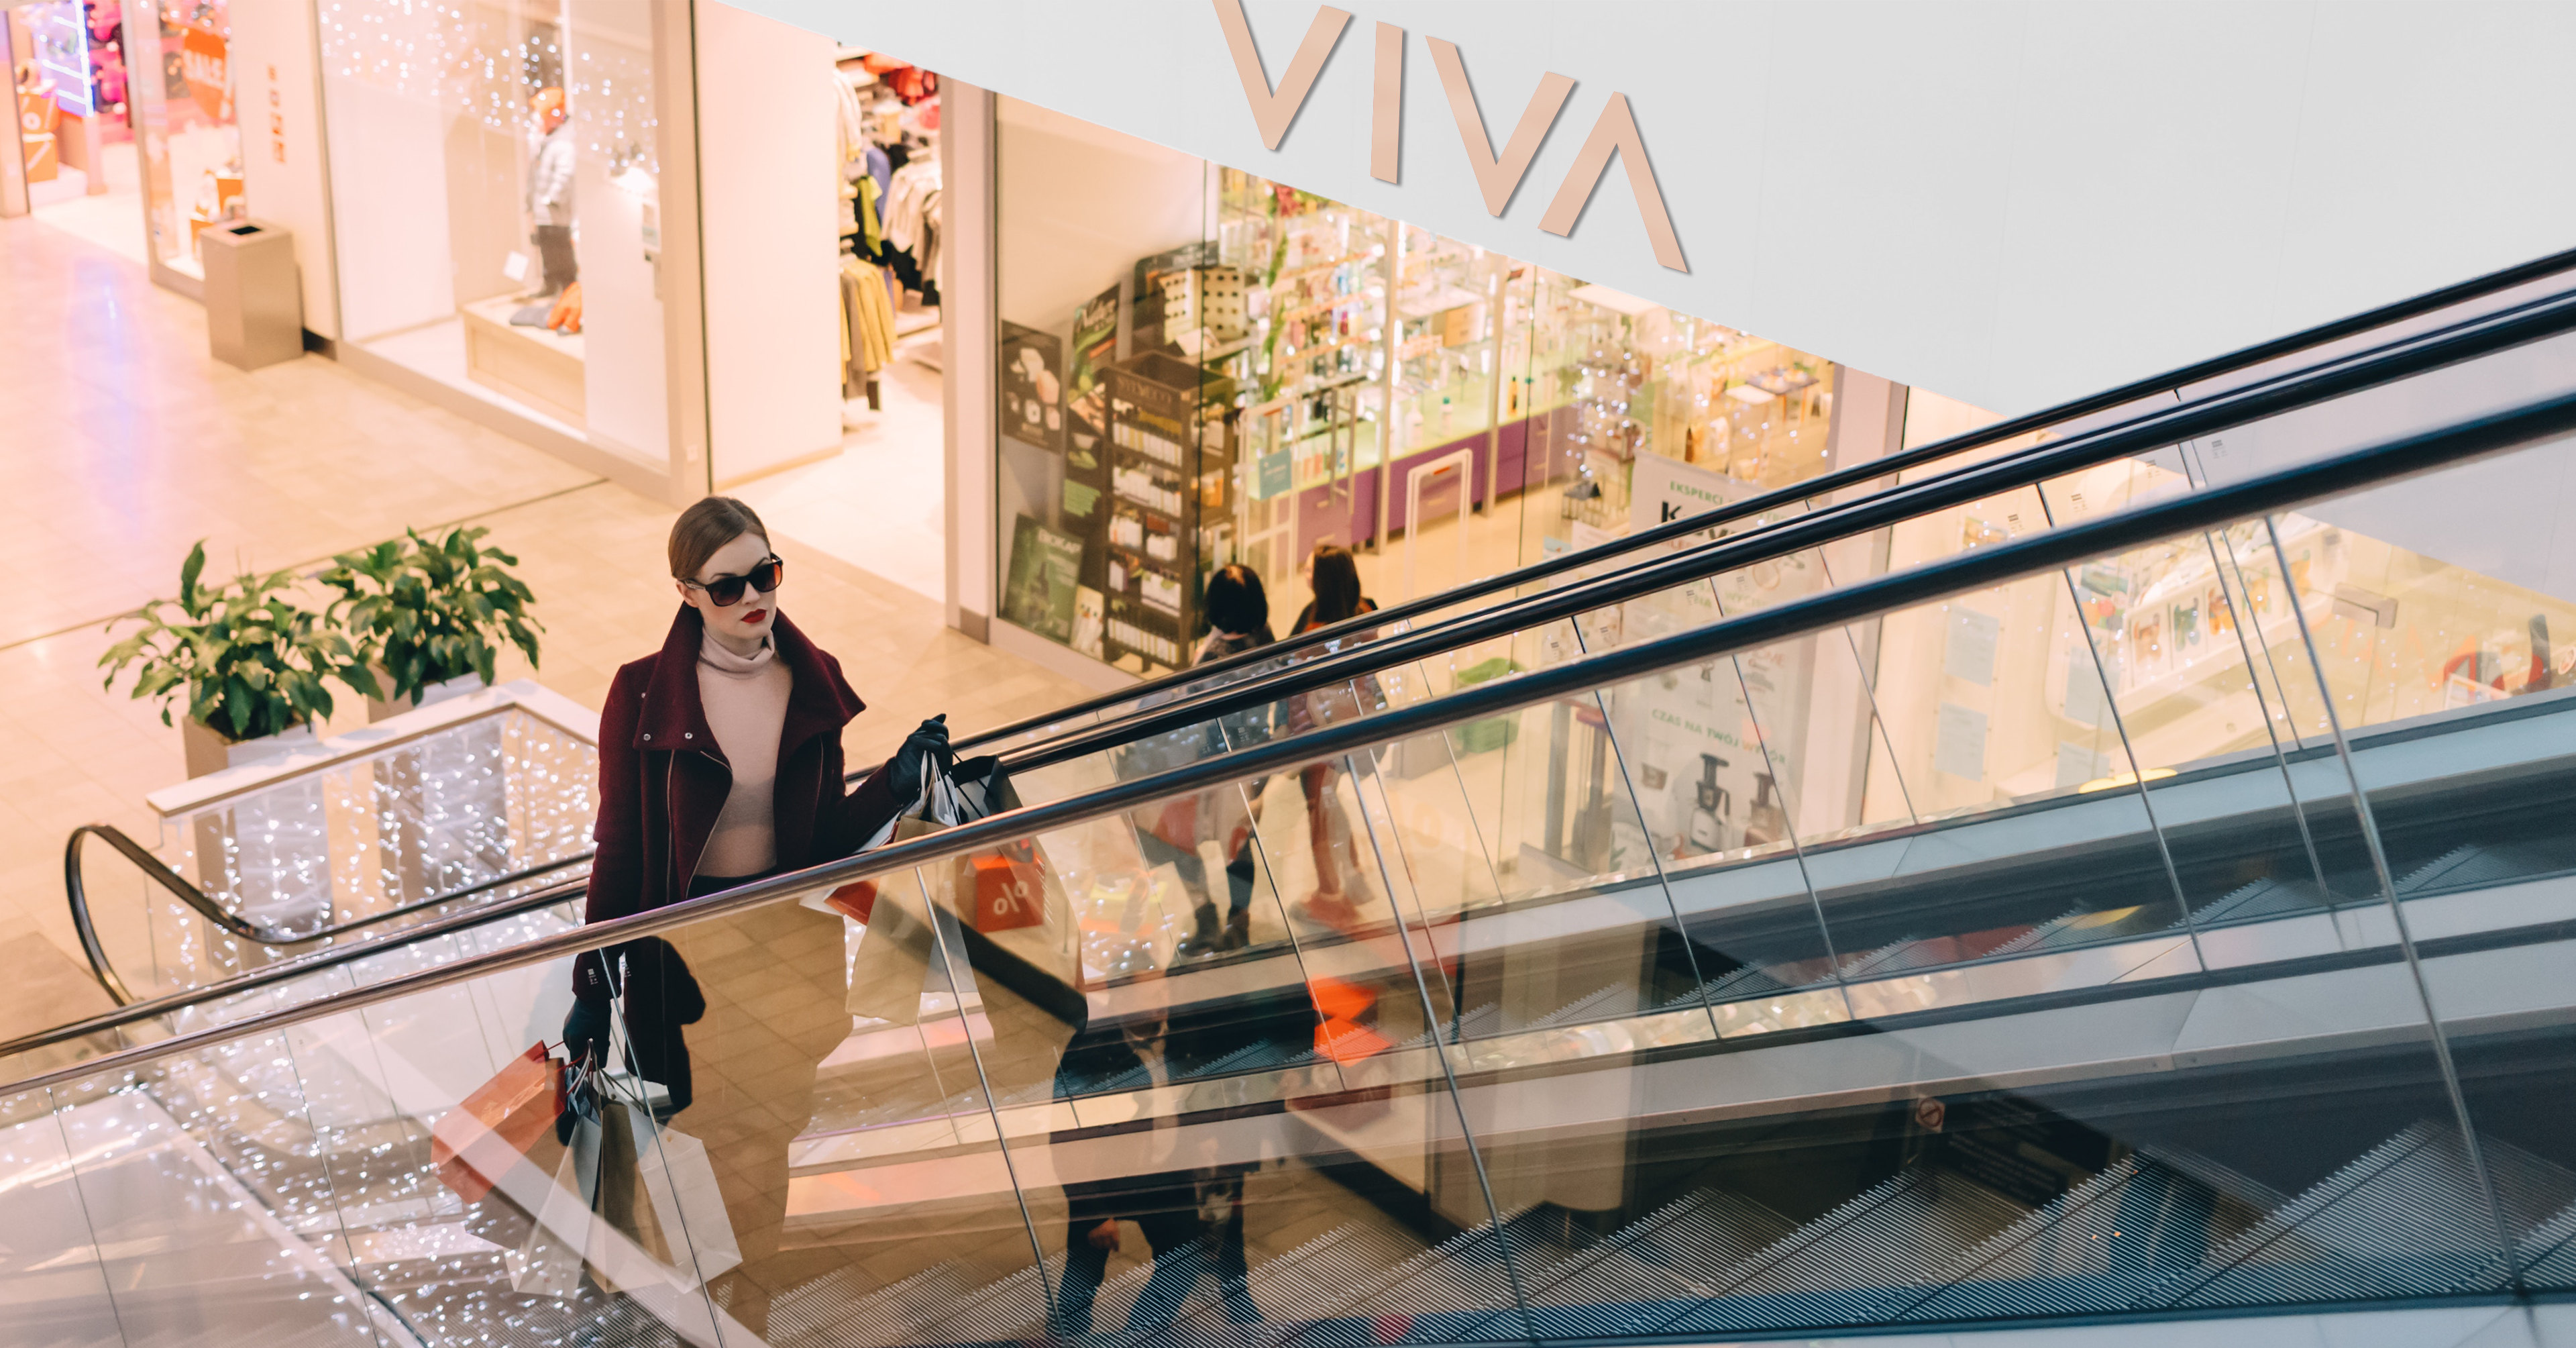 VIVA Shoes Store - iDesign Branding